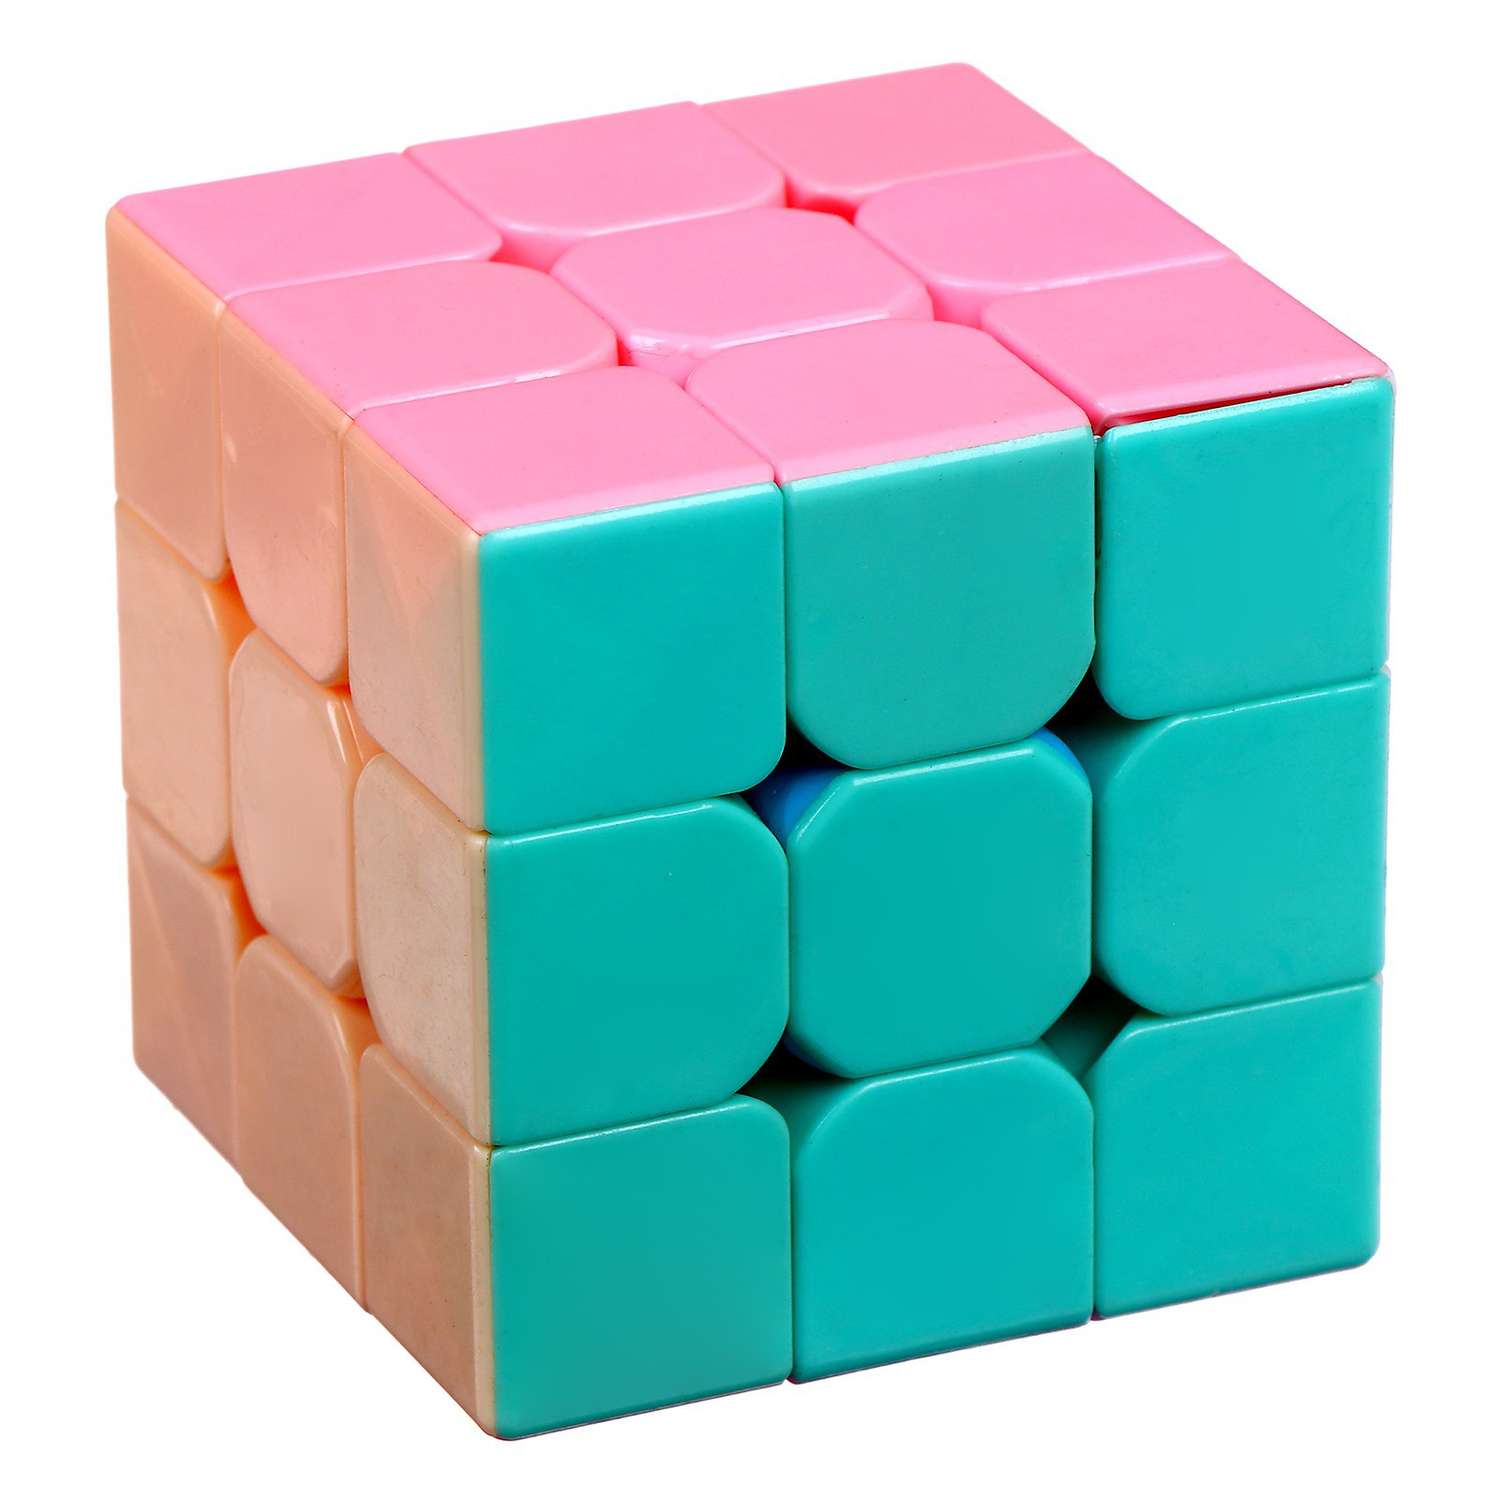 Игрушка Sima-Land механическая «Кубик» 5 5×5 5×5 5 см - фото 4